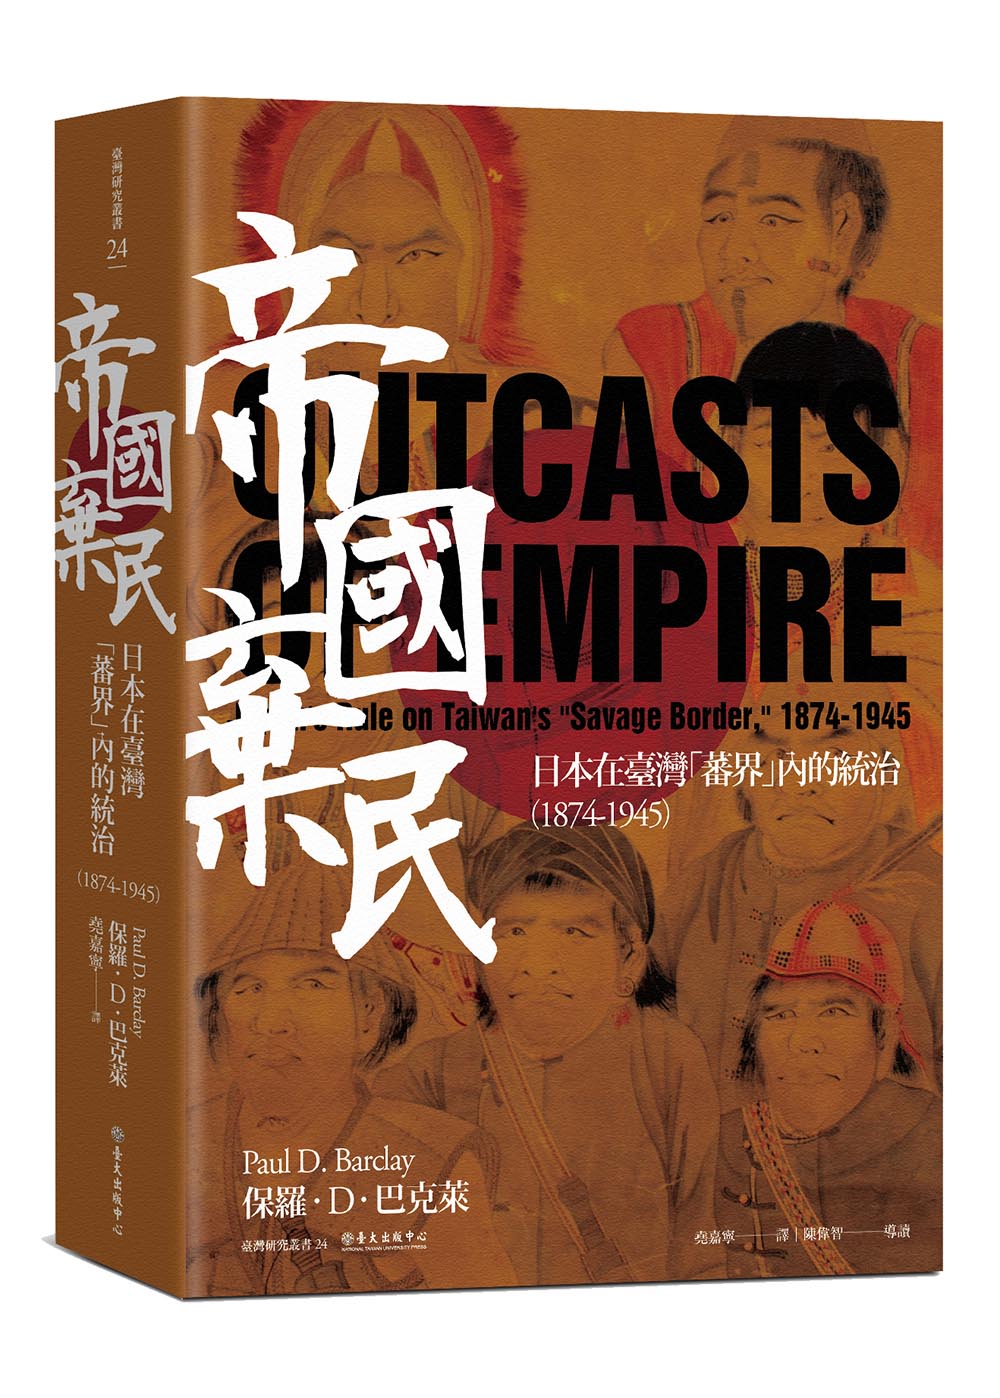 帝國棄民──日本在臺灣「蕃界」內的統治（1874-1945）